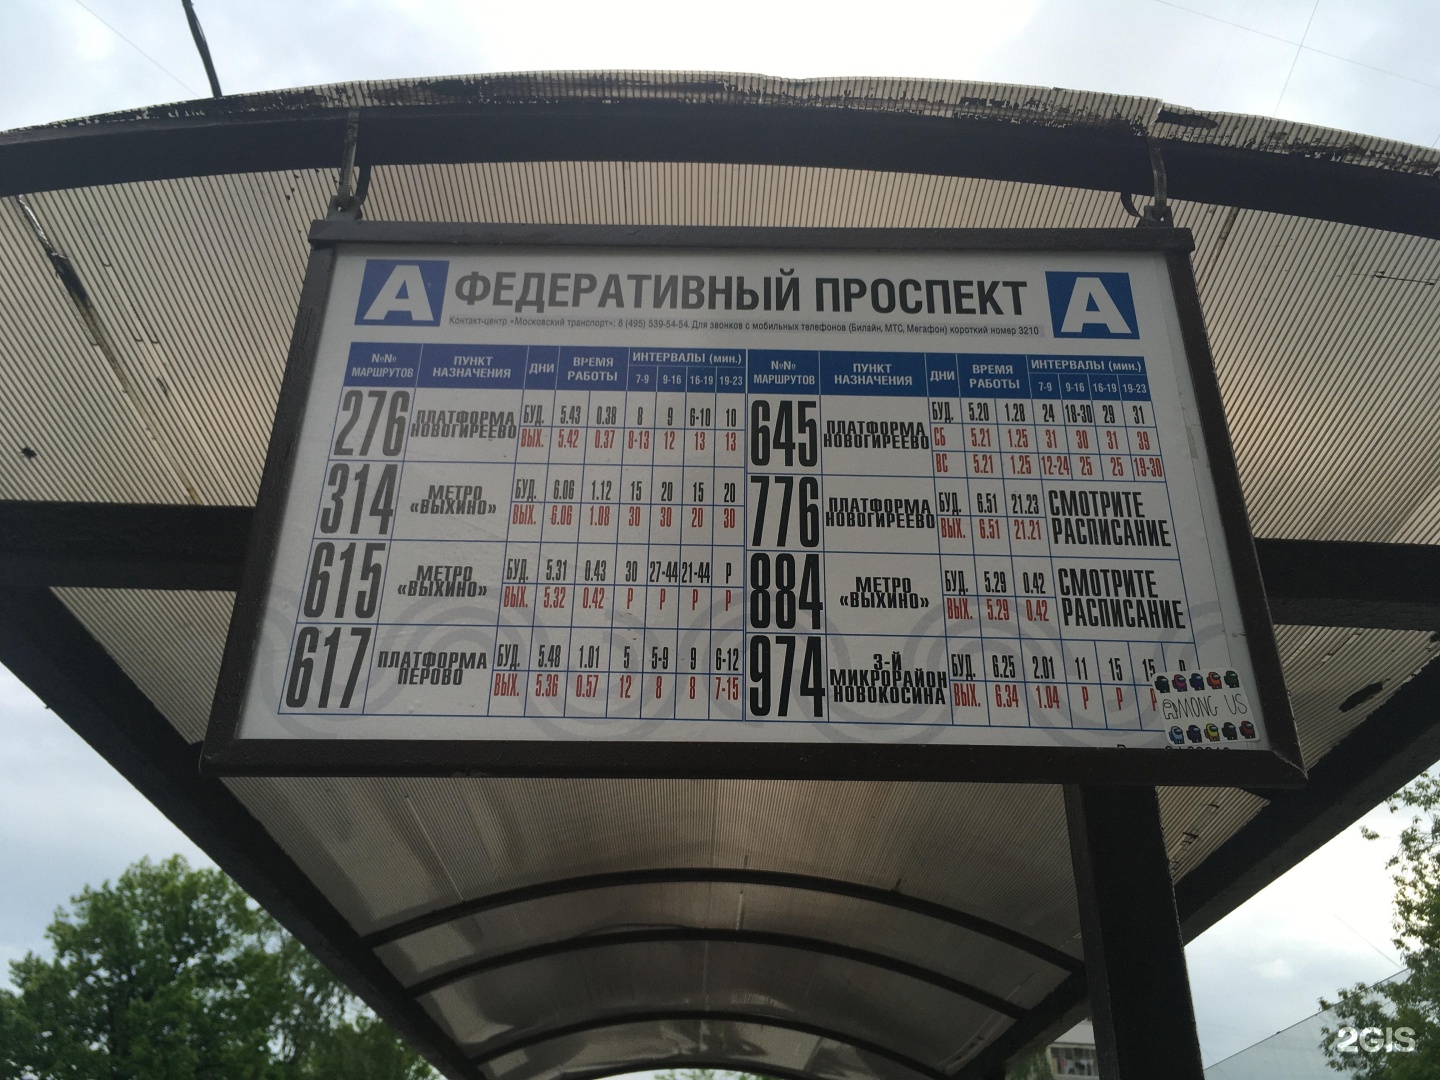 Советский проспект автобусы. Остановка Федеративный проспект.